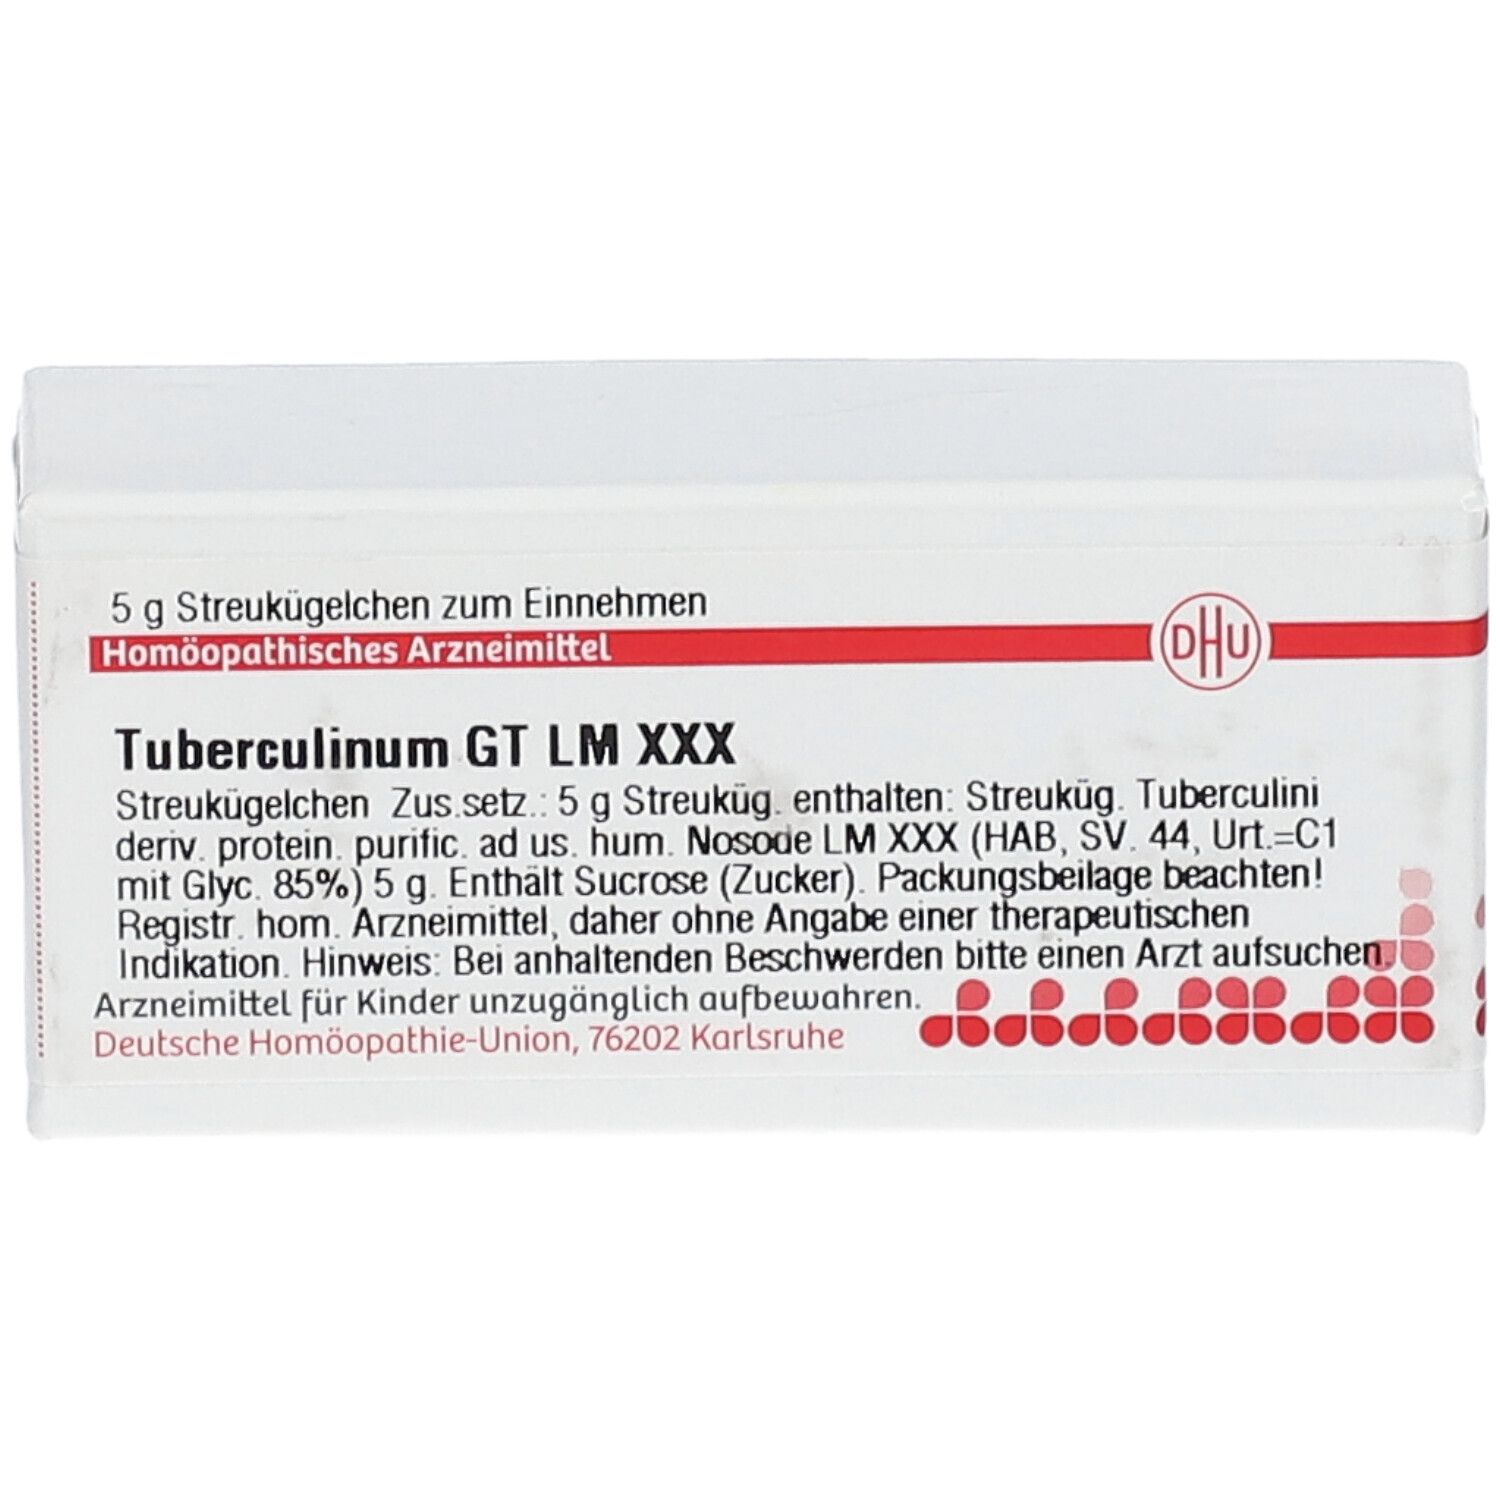 DHU Tuberculinum GT LM XXX